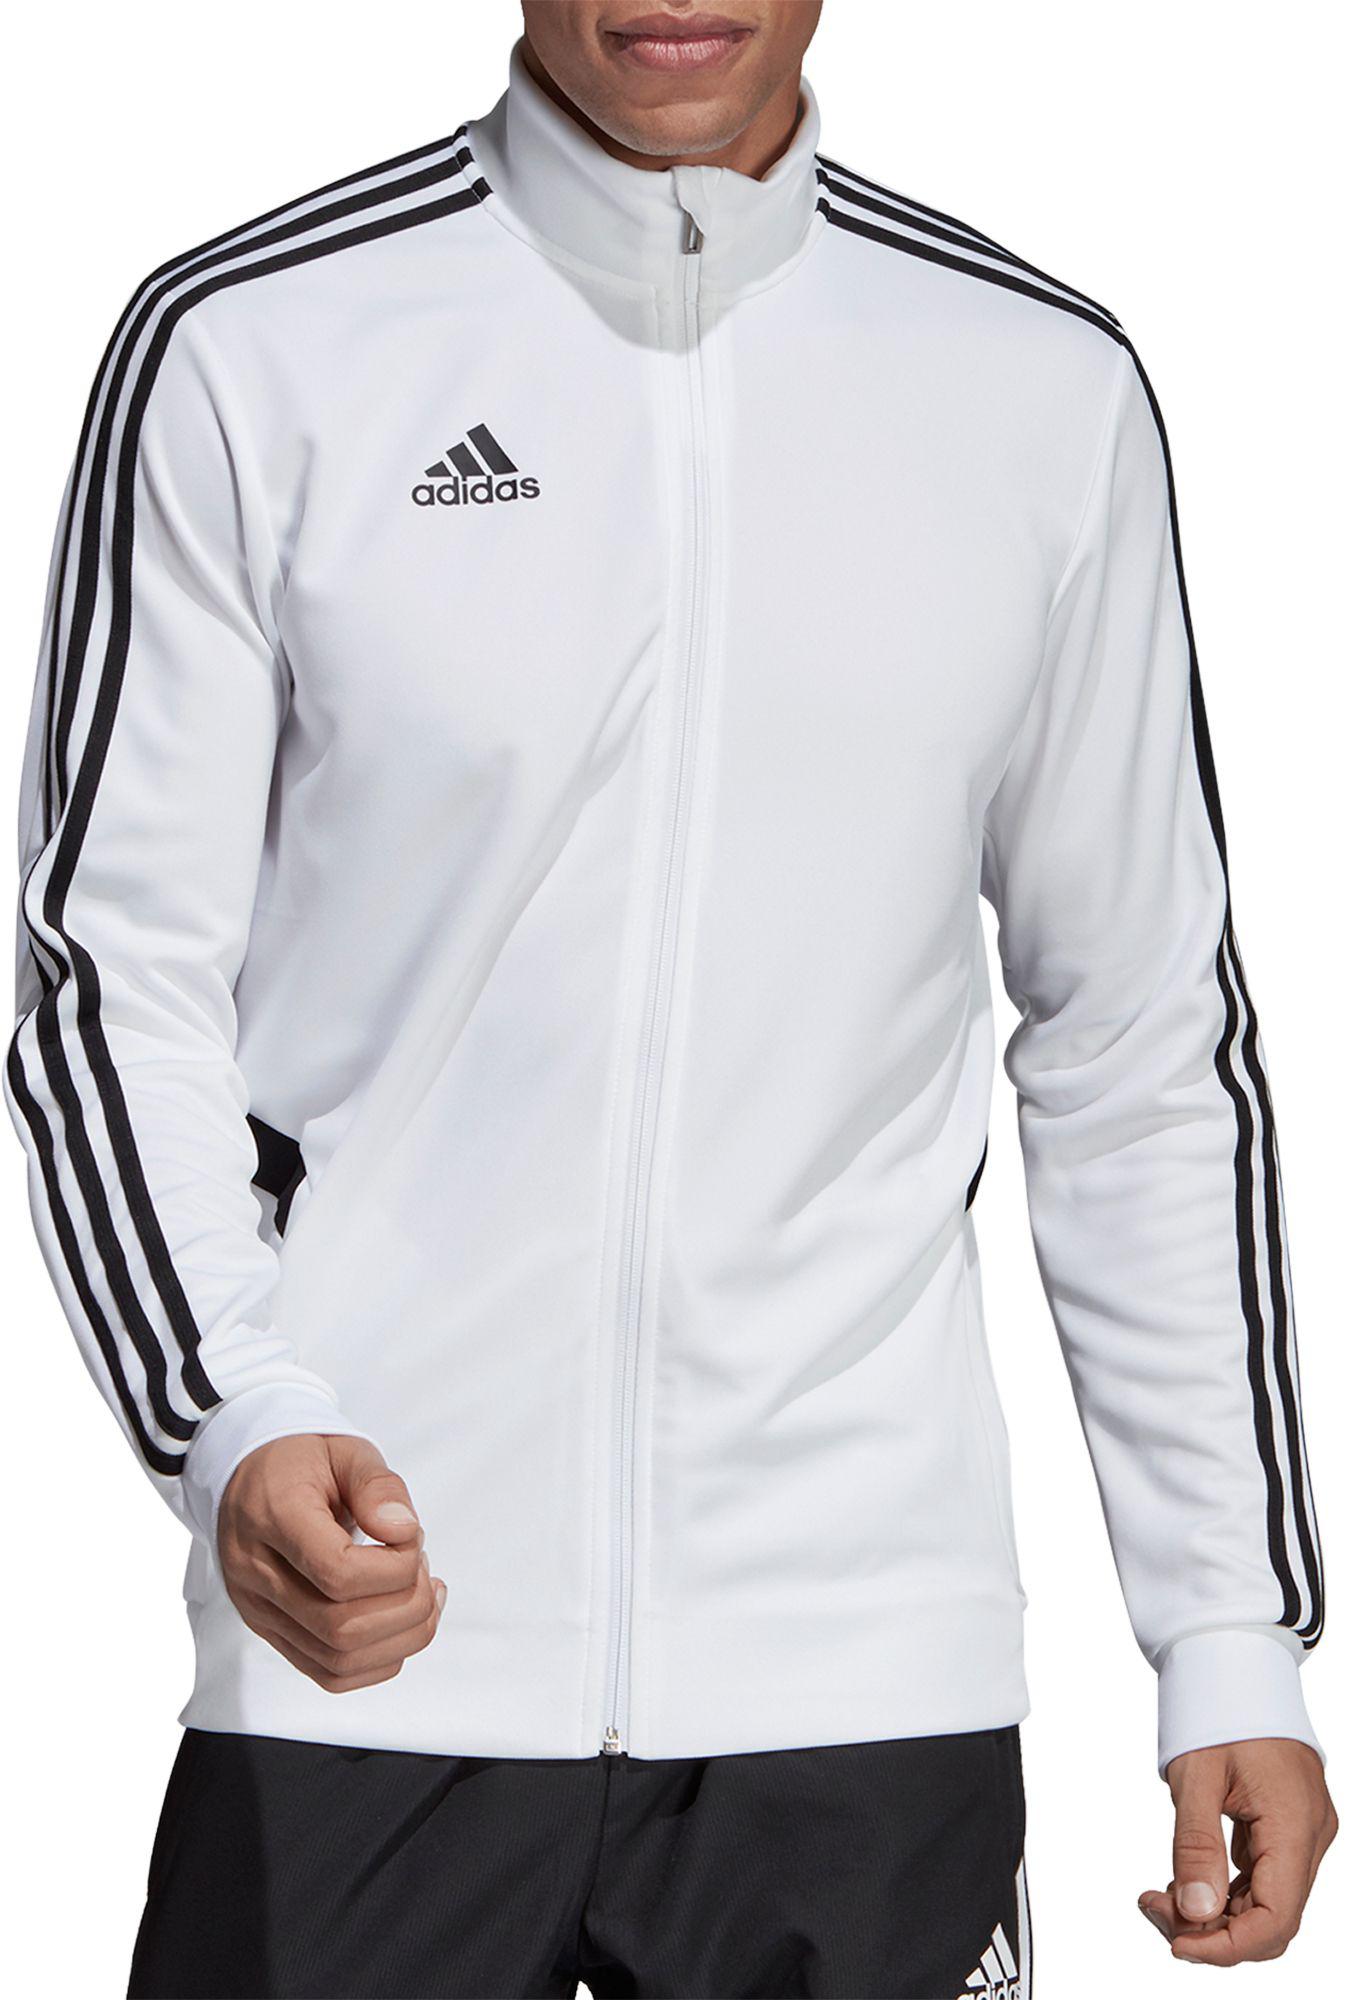 adidas white training jacket